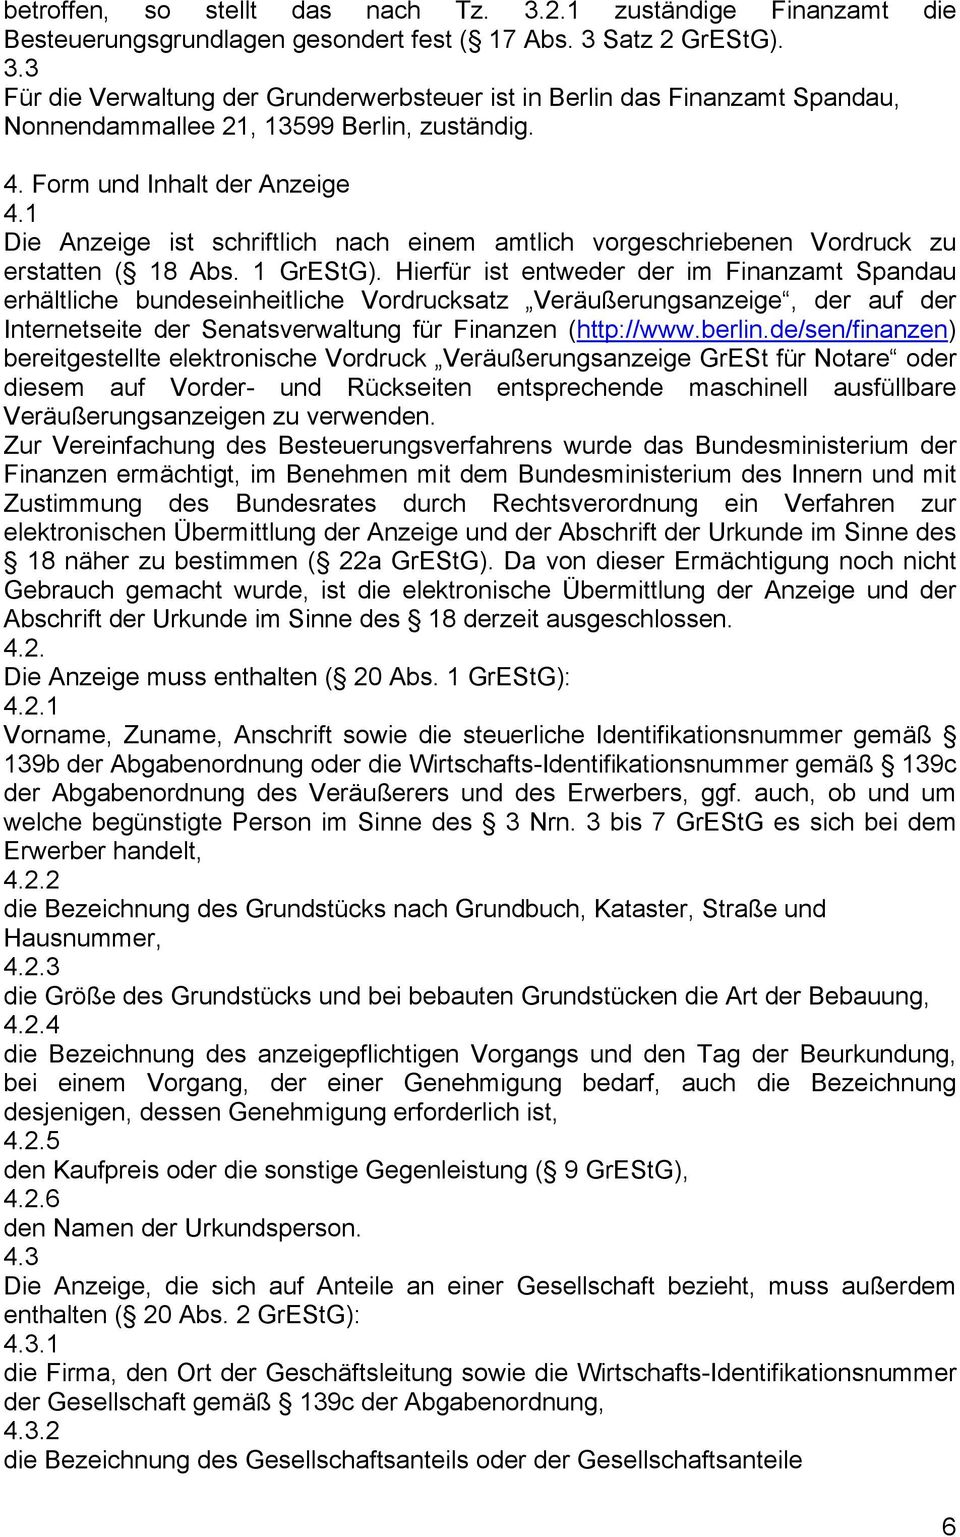 Hierfür ist entweder der im Finanzamt Spandau erhältliche bundeseinheitliche Vordrucksatz Veräußerungsanzeige, der auf der Internetseite der Senatsverwaltung für Finanzen (http://www.berlin.